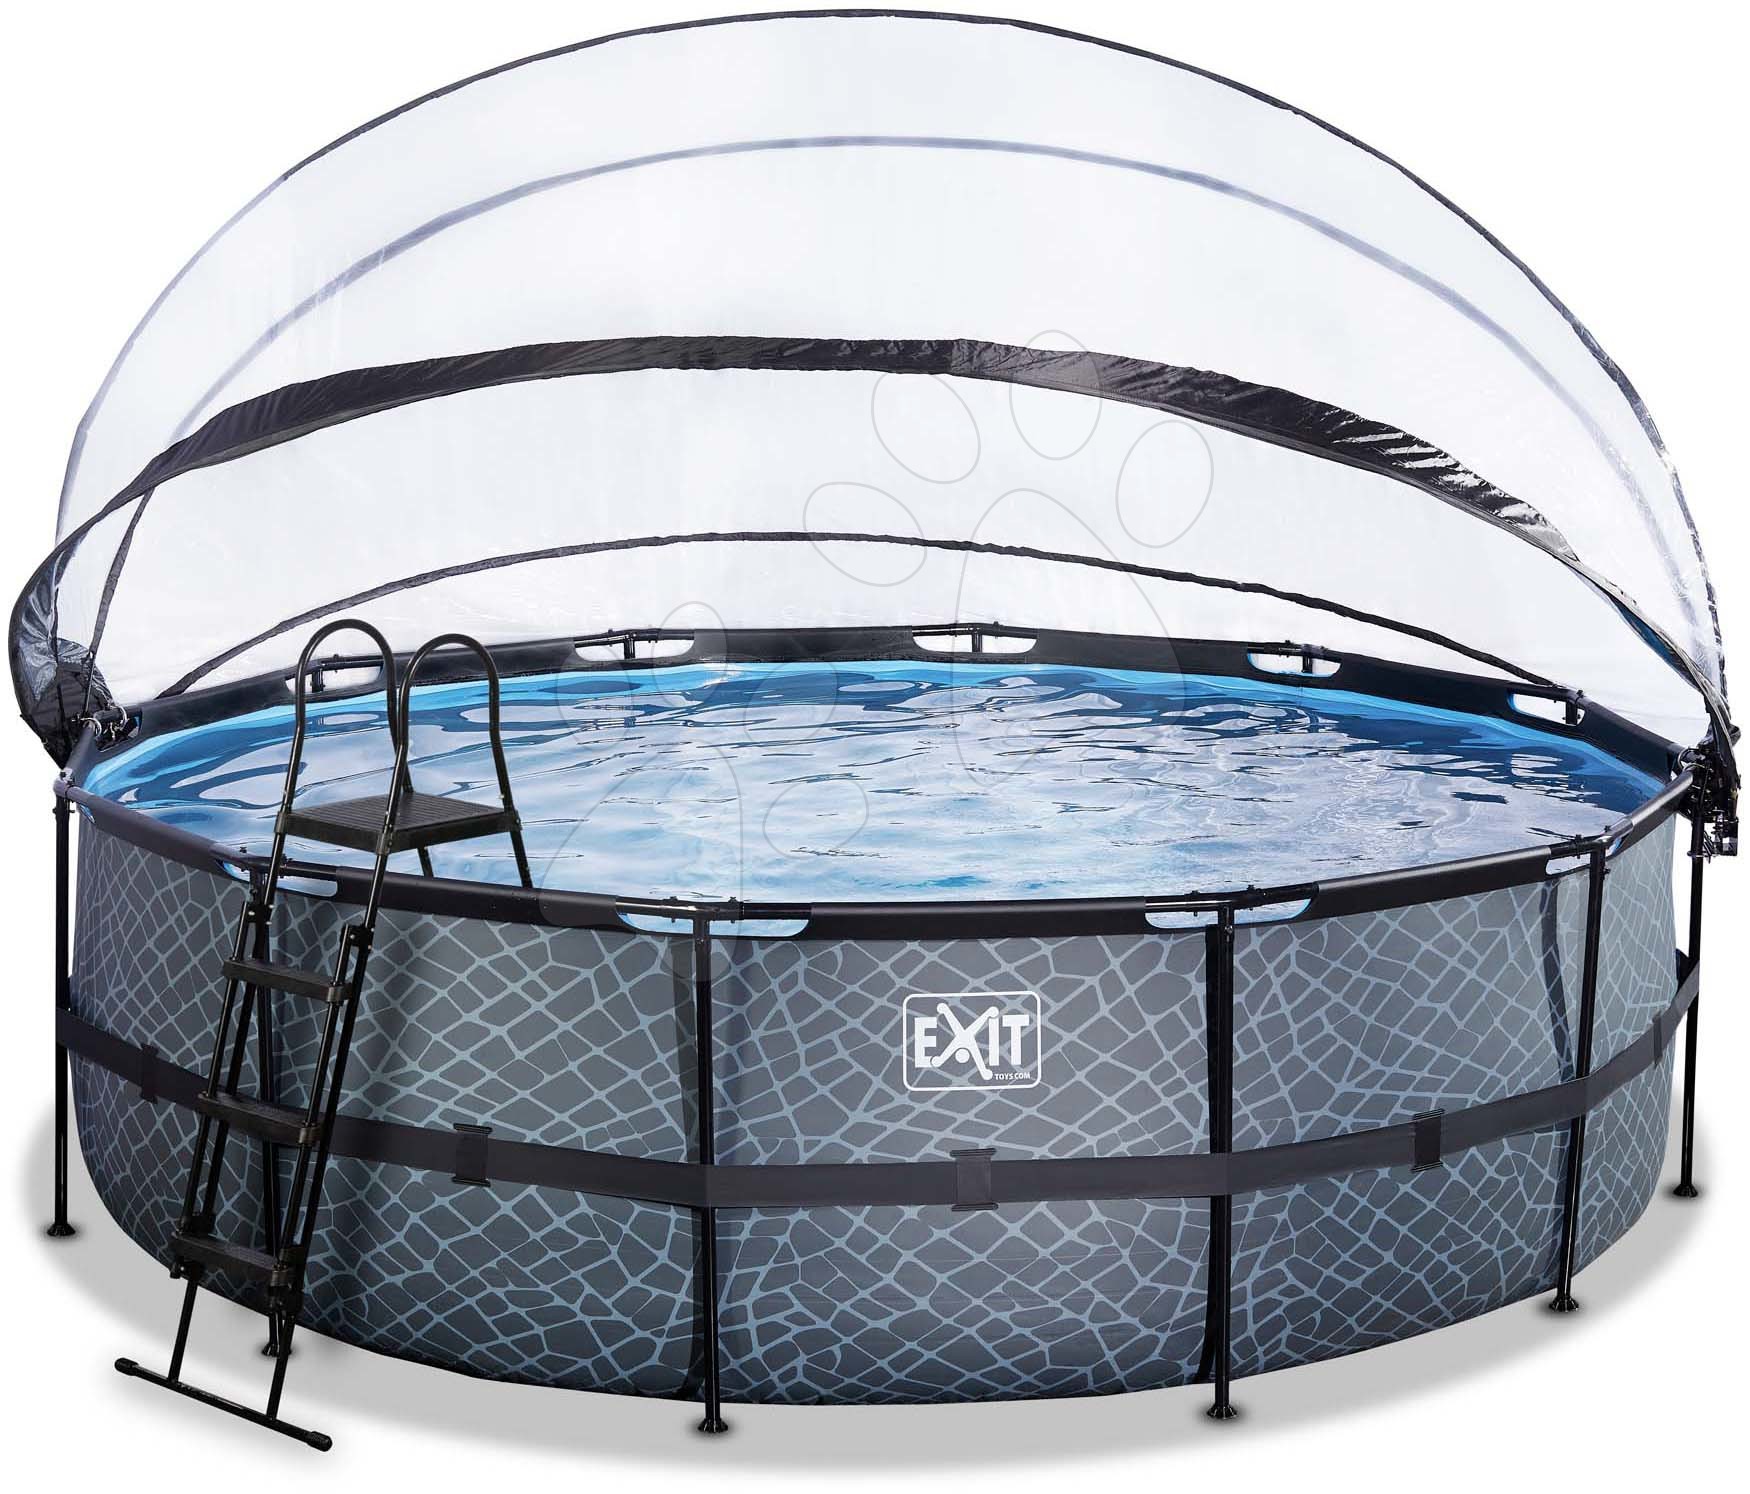 Bazén s krytom pieskovou filtráciou a tepelným čerpadlom Stone pool Exit Toys kruhový oceľová konštrukcia 488*122 cm šedý od 6 rokov